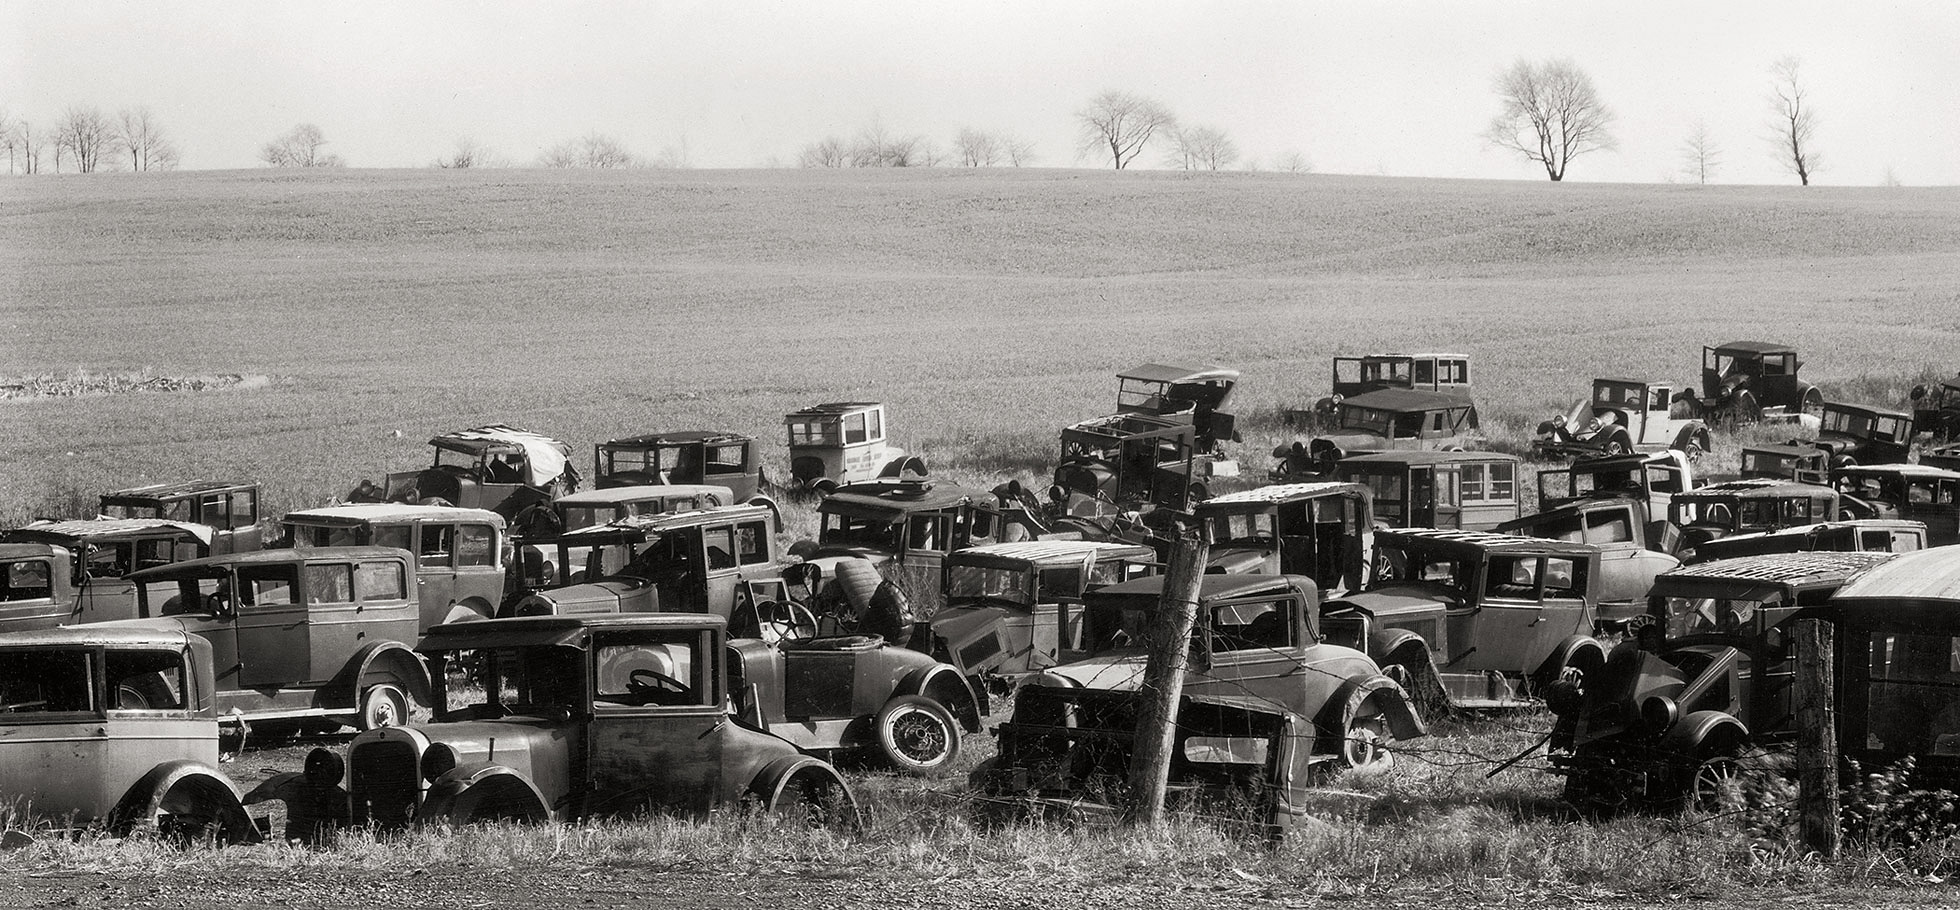 Walker Evans (American, 1903-1975) 'Joe's Auto Graveyard' 1936